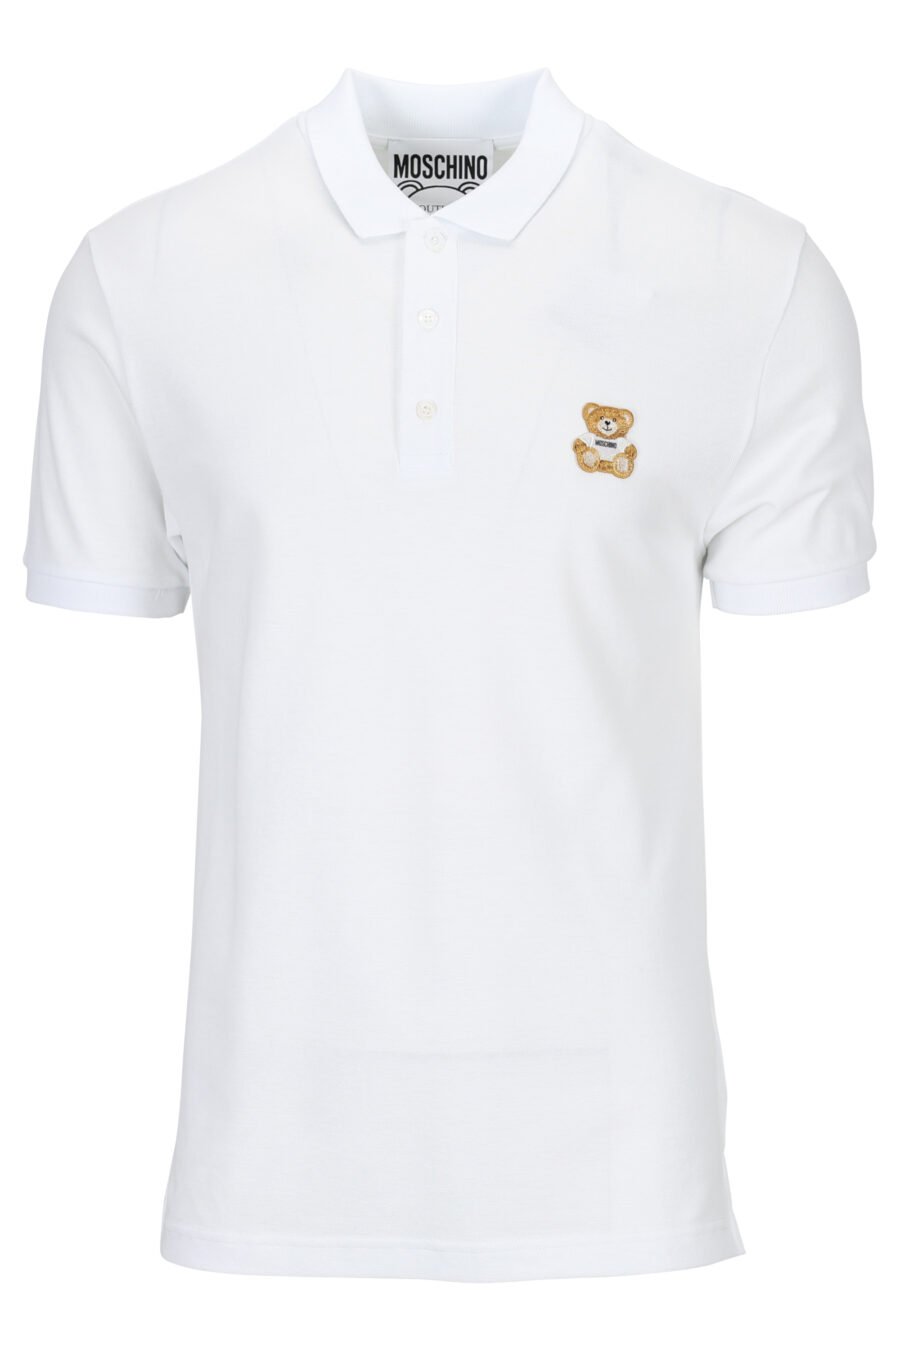 White polo shirt with bear mini logo - 889316660630